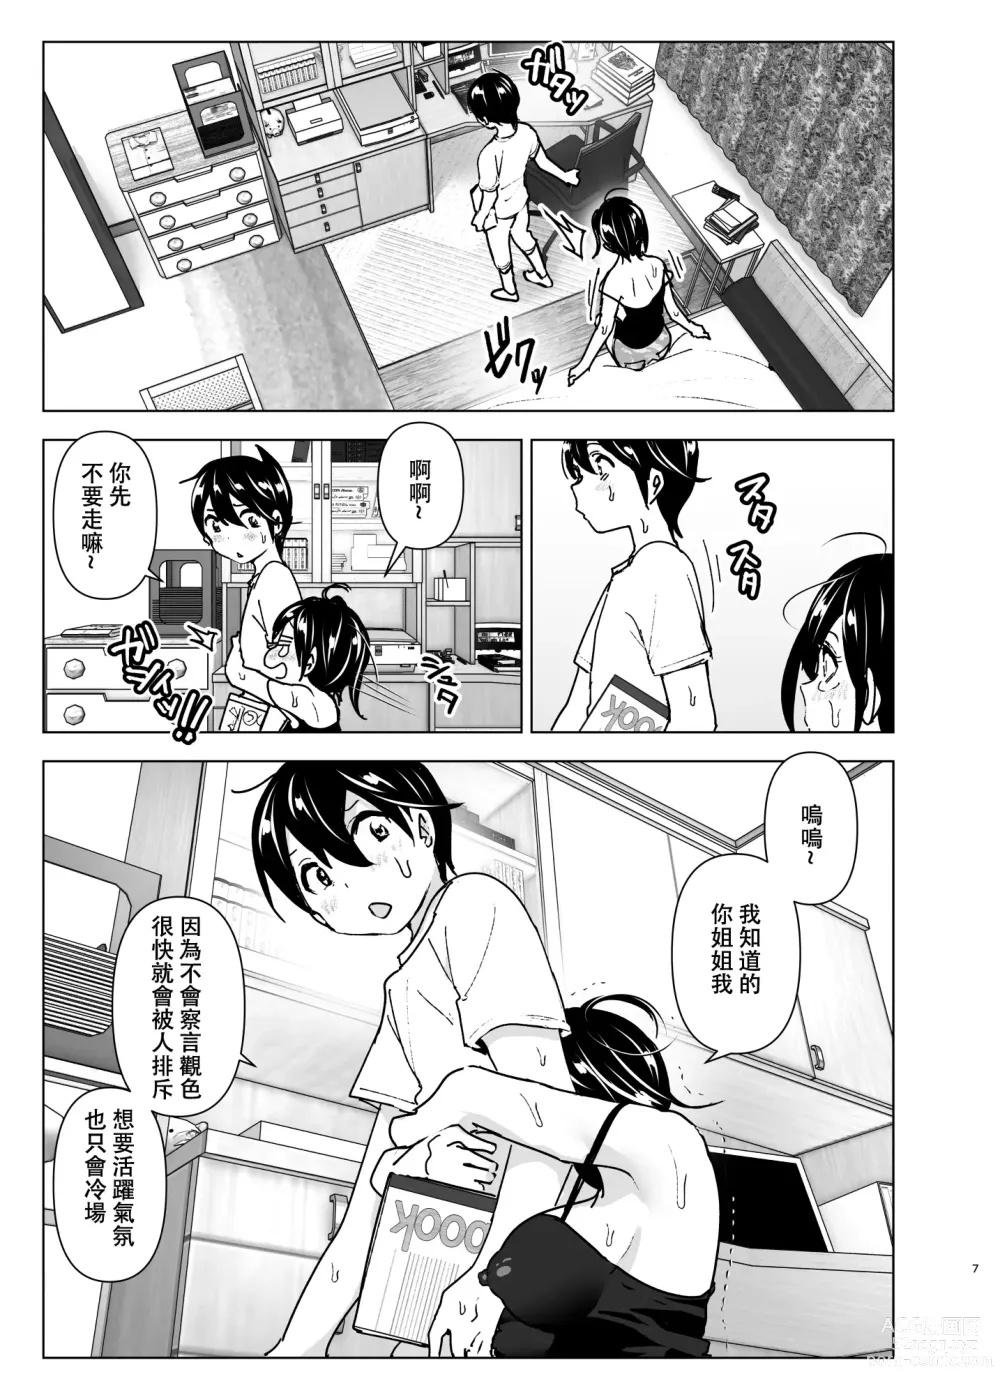 Page 6 of doujinshi 姐姐與傾聽抱怨的弟弟的故事 (decensored)